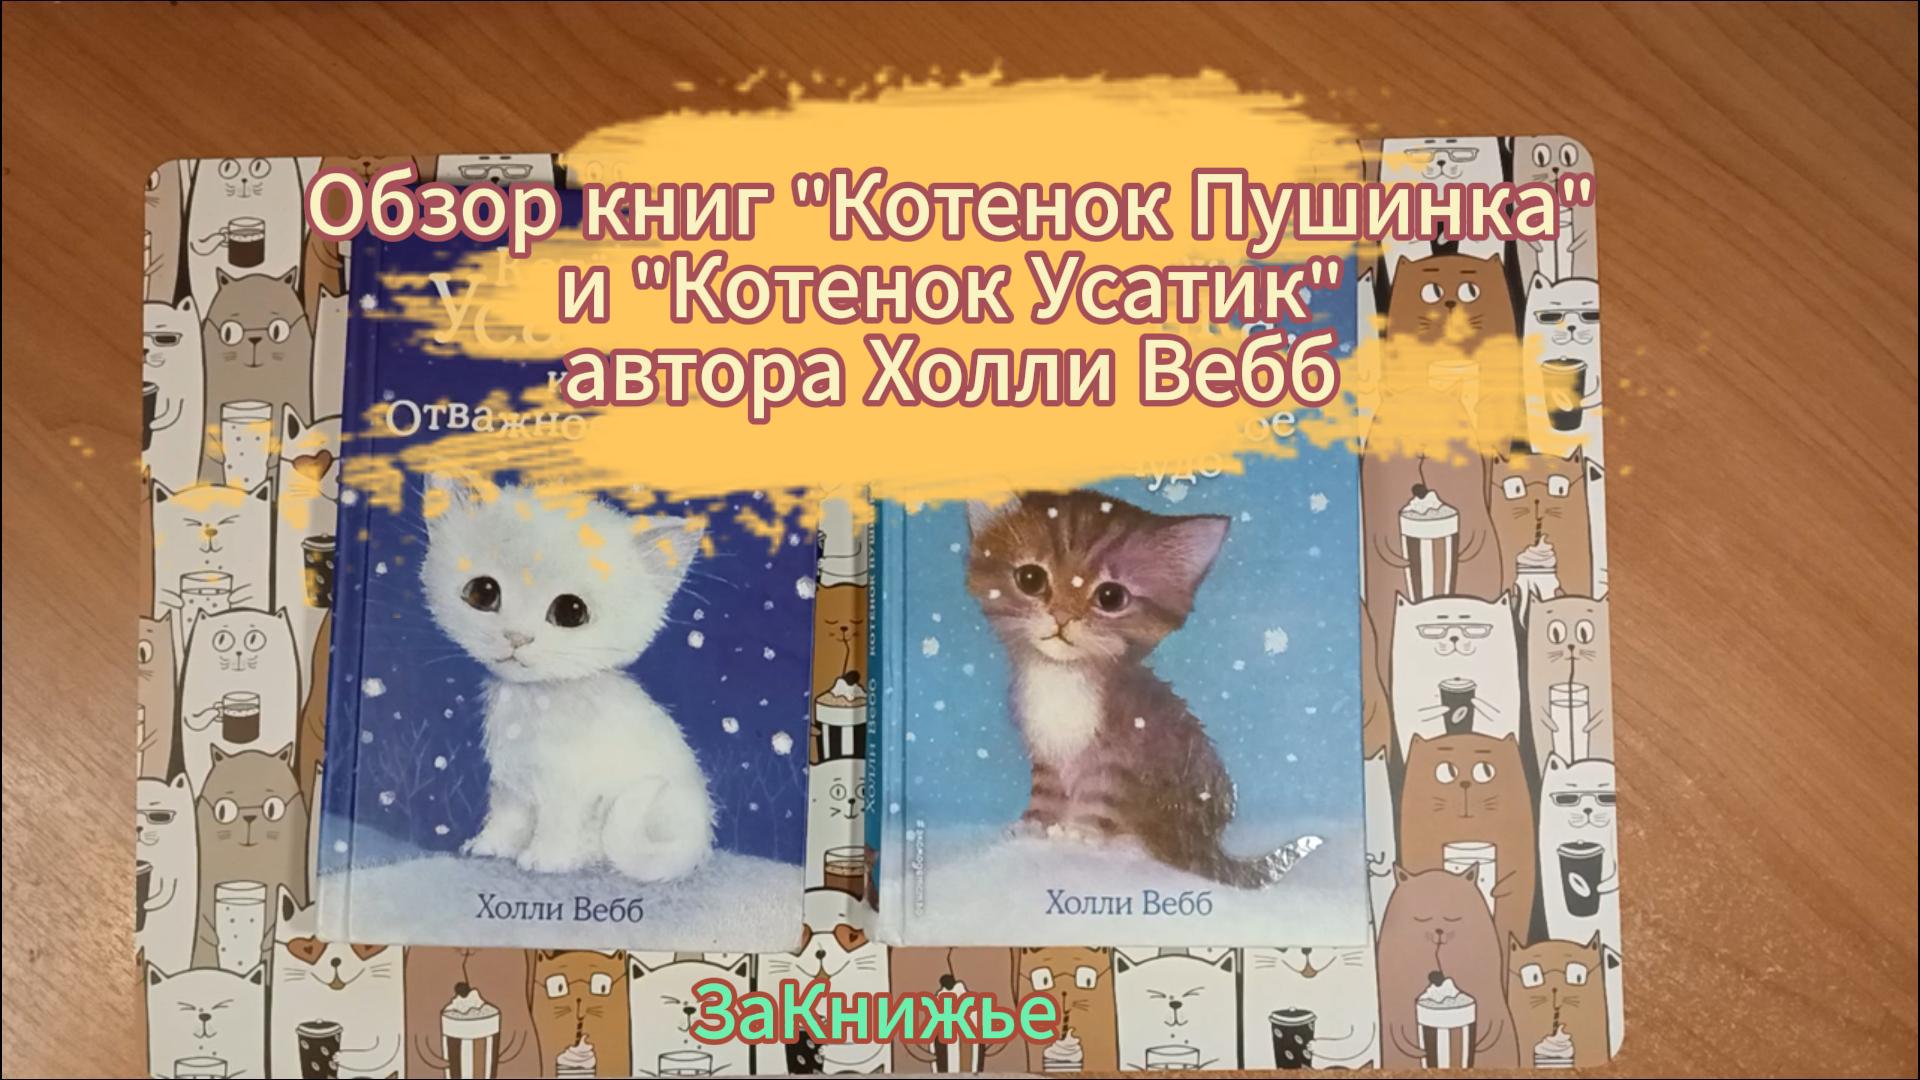 Обзор детских книг для чтения автора Холли Вебб Пушинка и Усатик.